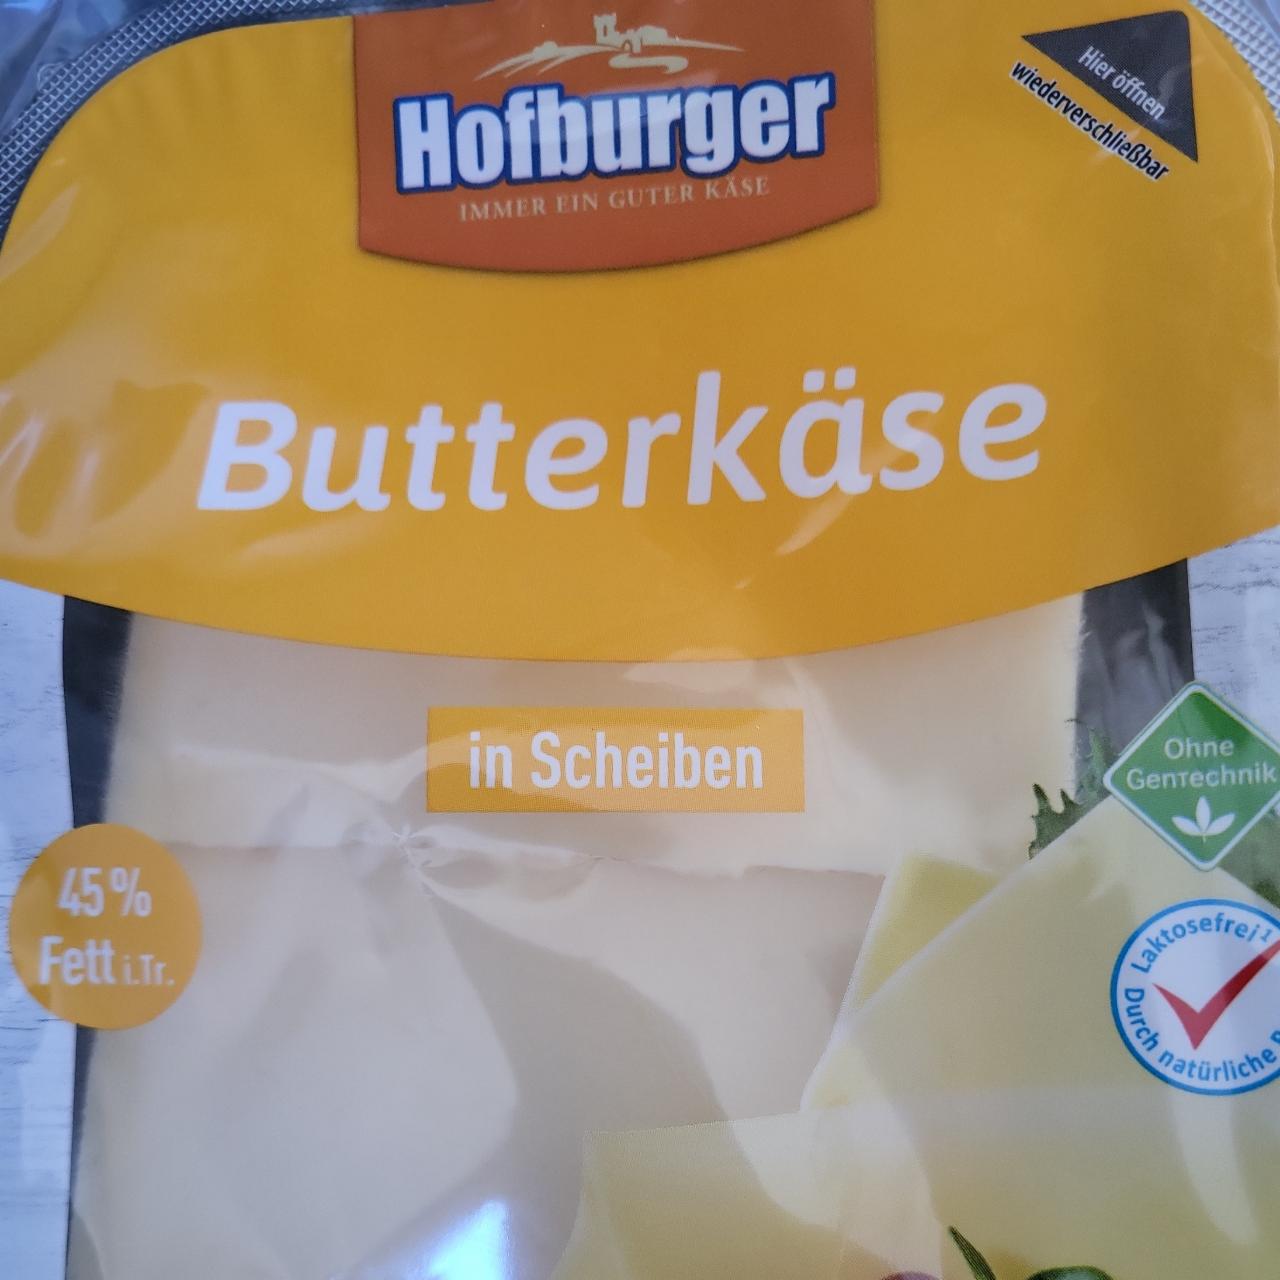 Фото - Butterkäse 45% Hofburger